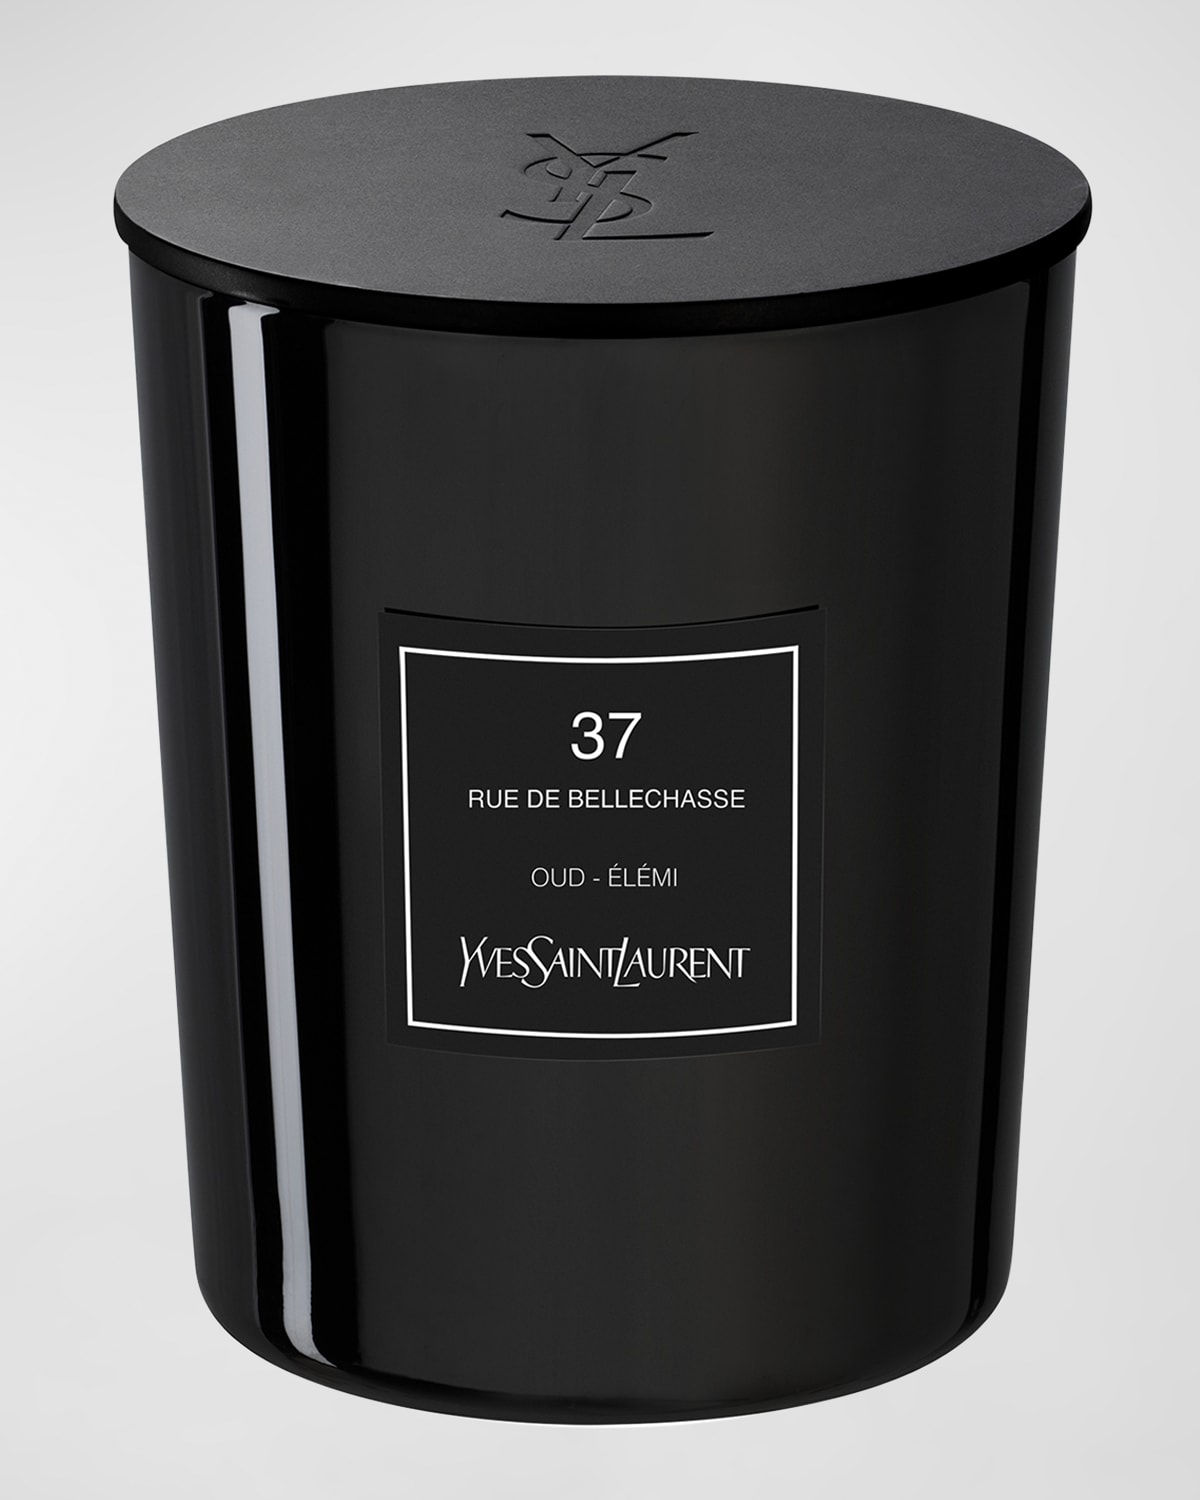 Saint Laurent Rue De Bellechasse Candle - Le Vestiaire Des Parfums Couture Edition, 550 G In Black